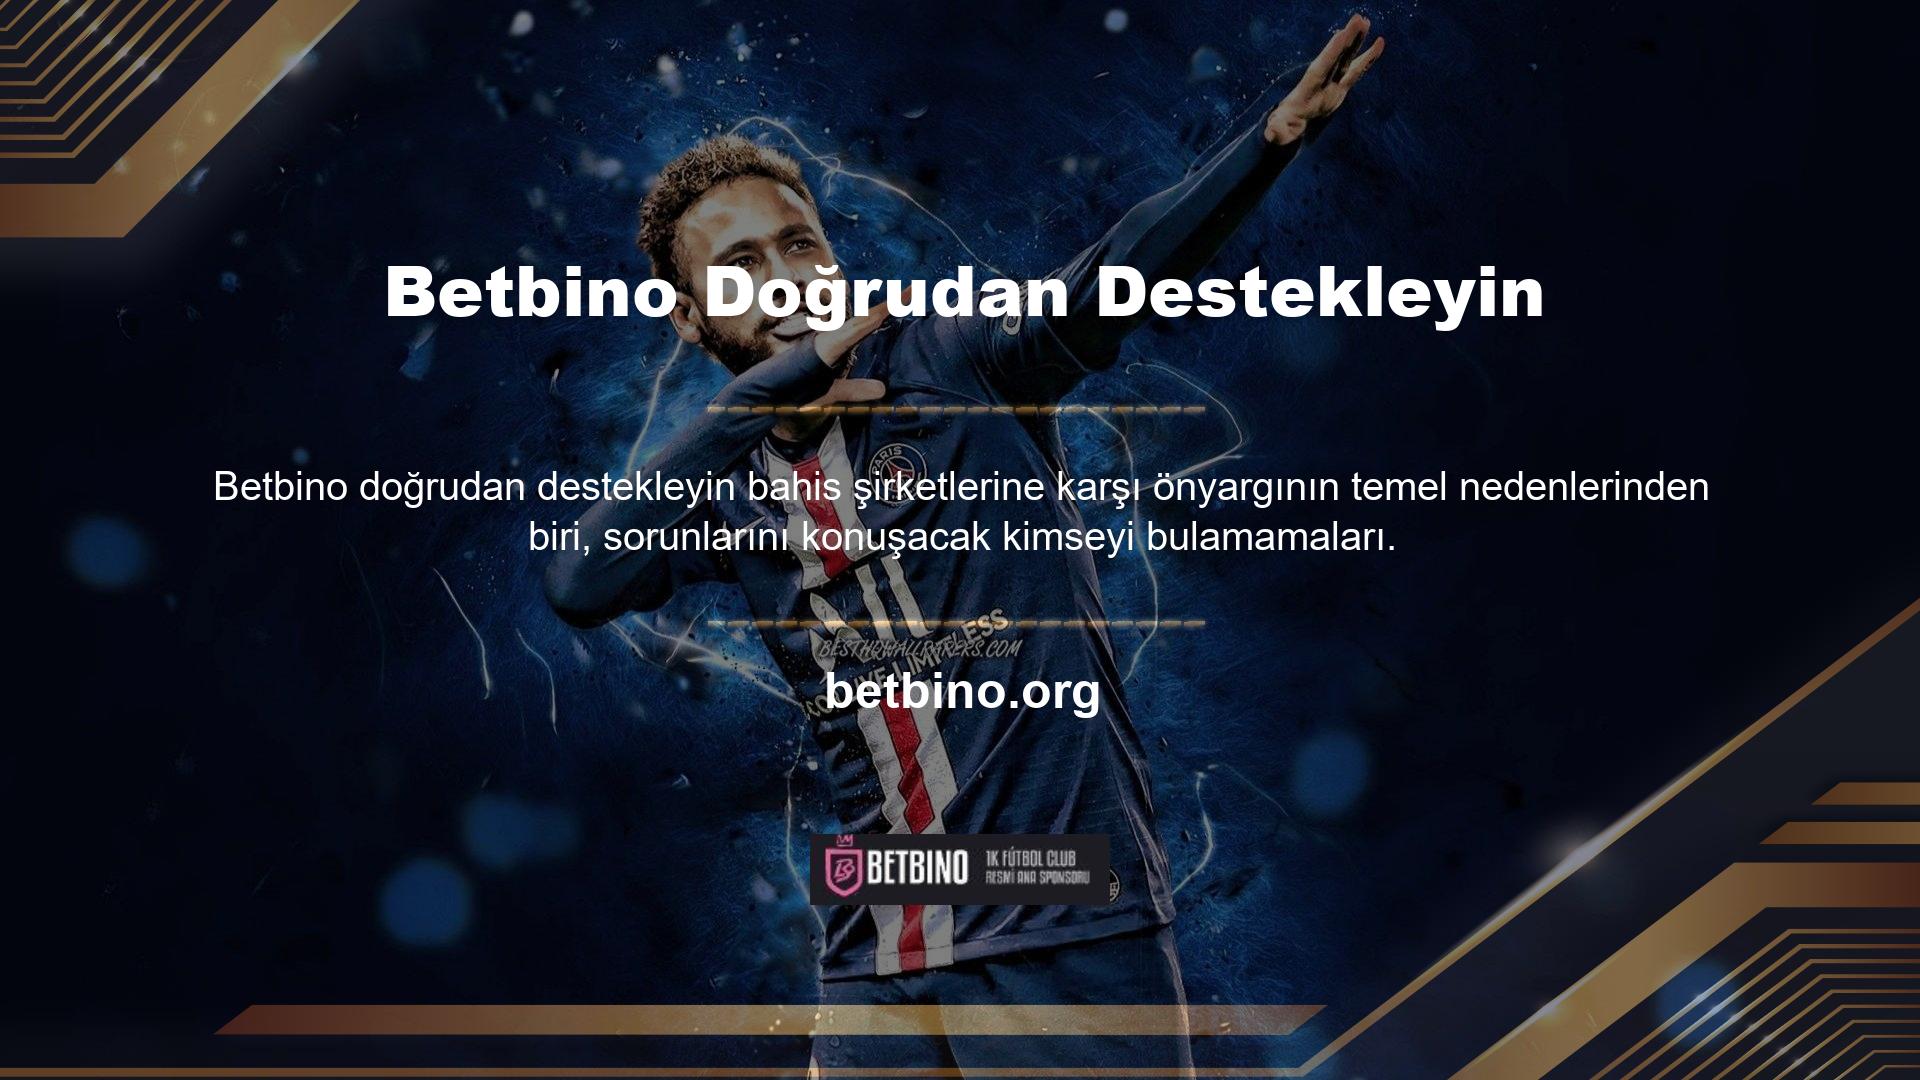 Bu sertifikasyon, Betbino Direct gibi yetkili web siteleri ve insanların güvenmediği, yasa dışı ve dolandırıcılık amacıyla kurulan bazı web siteleri aracılığıyla yapılmaktadır